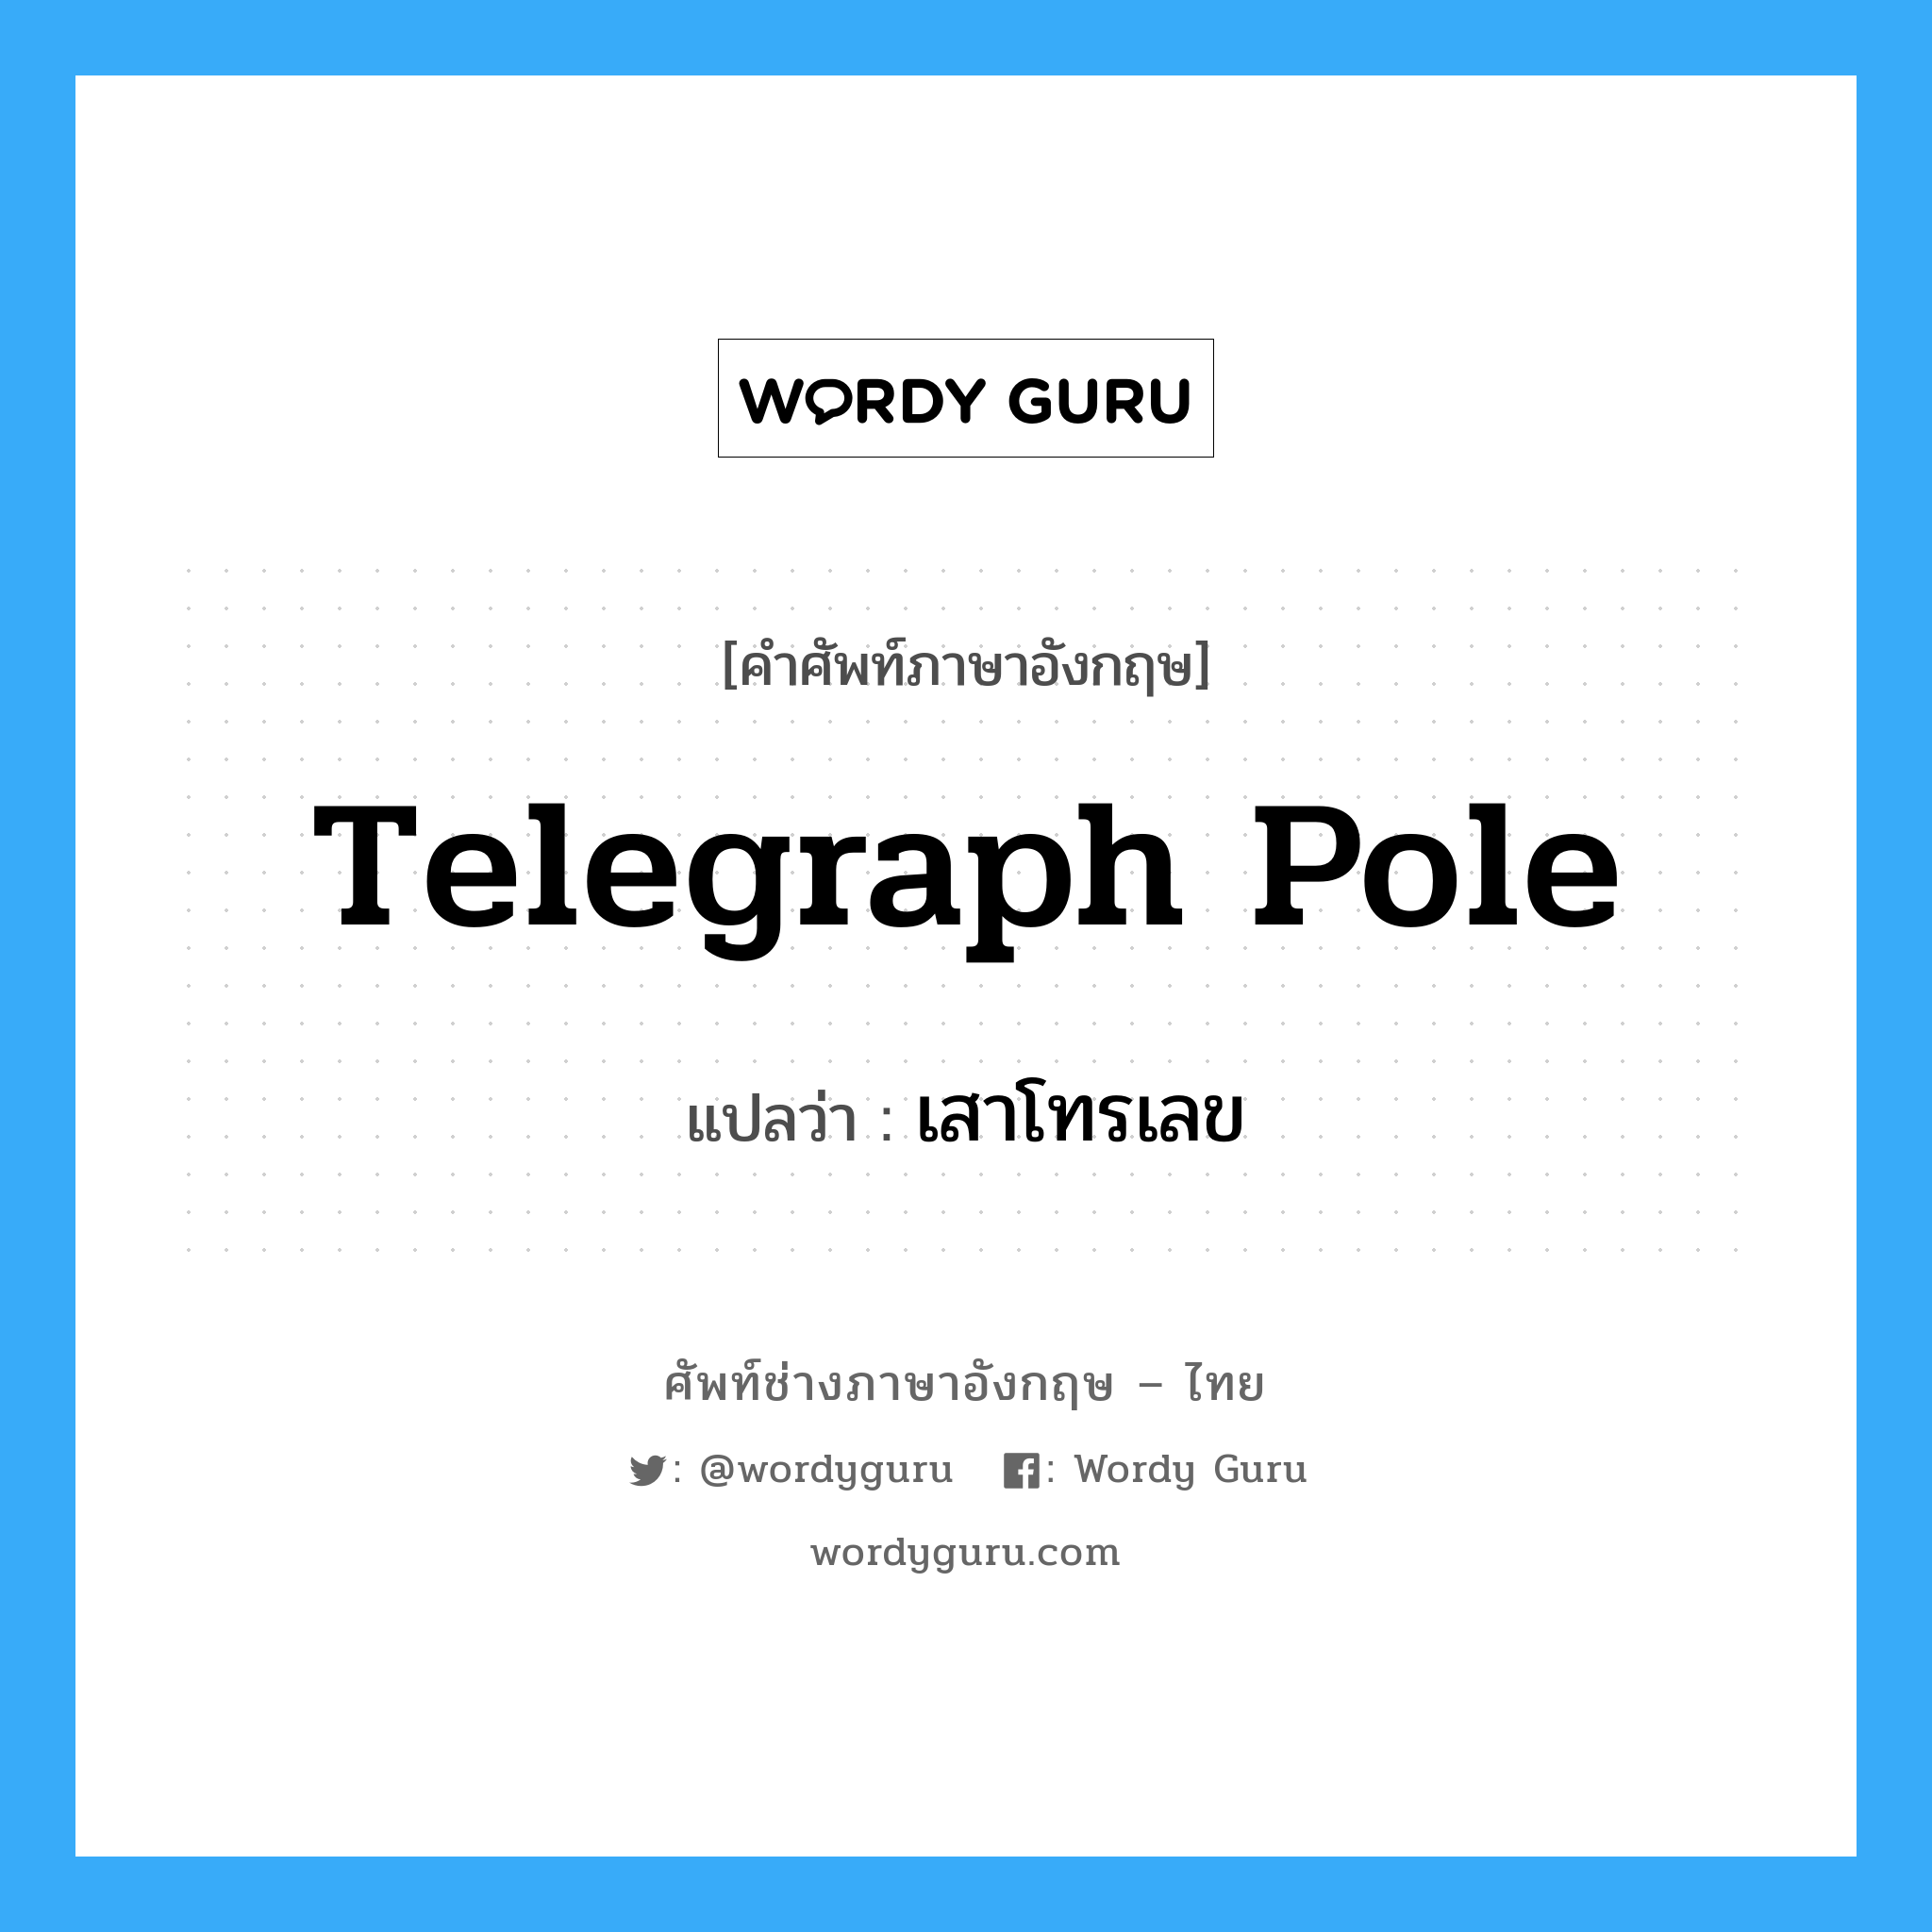 telegraph pole แปลว่า?, คำศัพท์ช่างภาษาอังกฤษ - ไทย telegraph pole คำศัพท์ภาษาอังกฤษ telegraph pole แปลว่า เสาโทรเลข